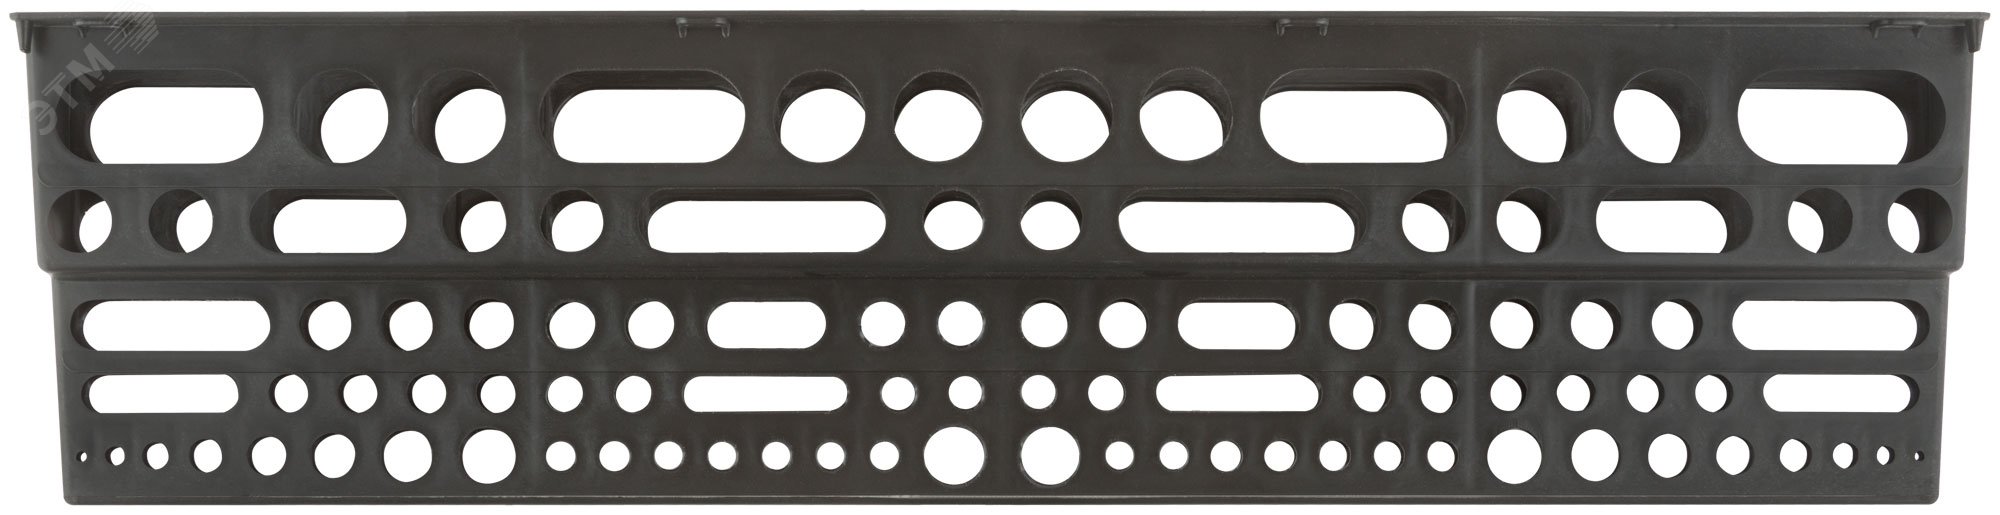 Полка для инструмента пластиковая черная, 96 отверстий, 610х150 мм 65704 КУРС РОС - превью 3